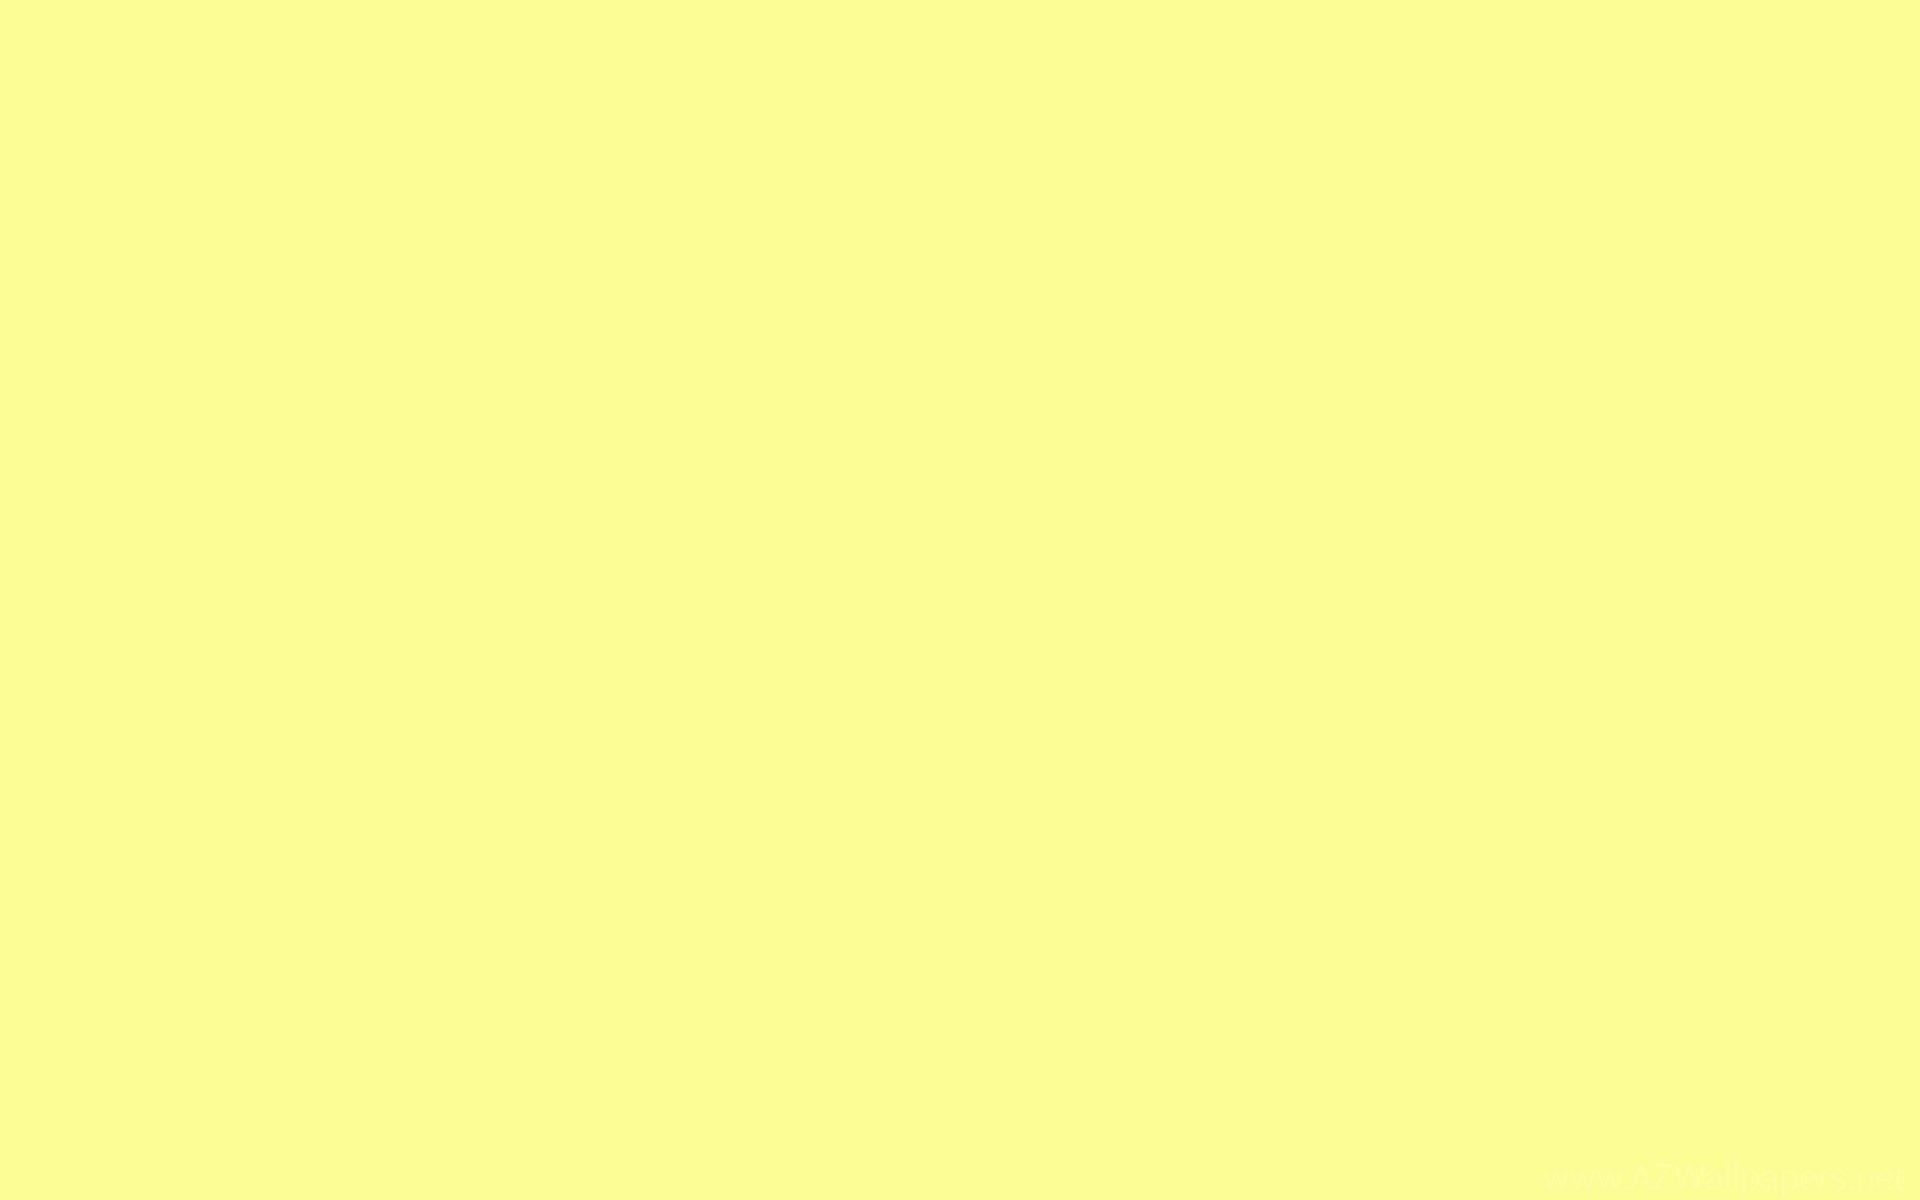 Light Yellow Aesthetic Wallpaper